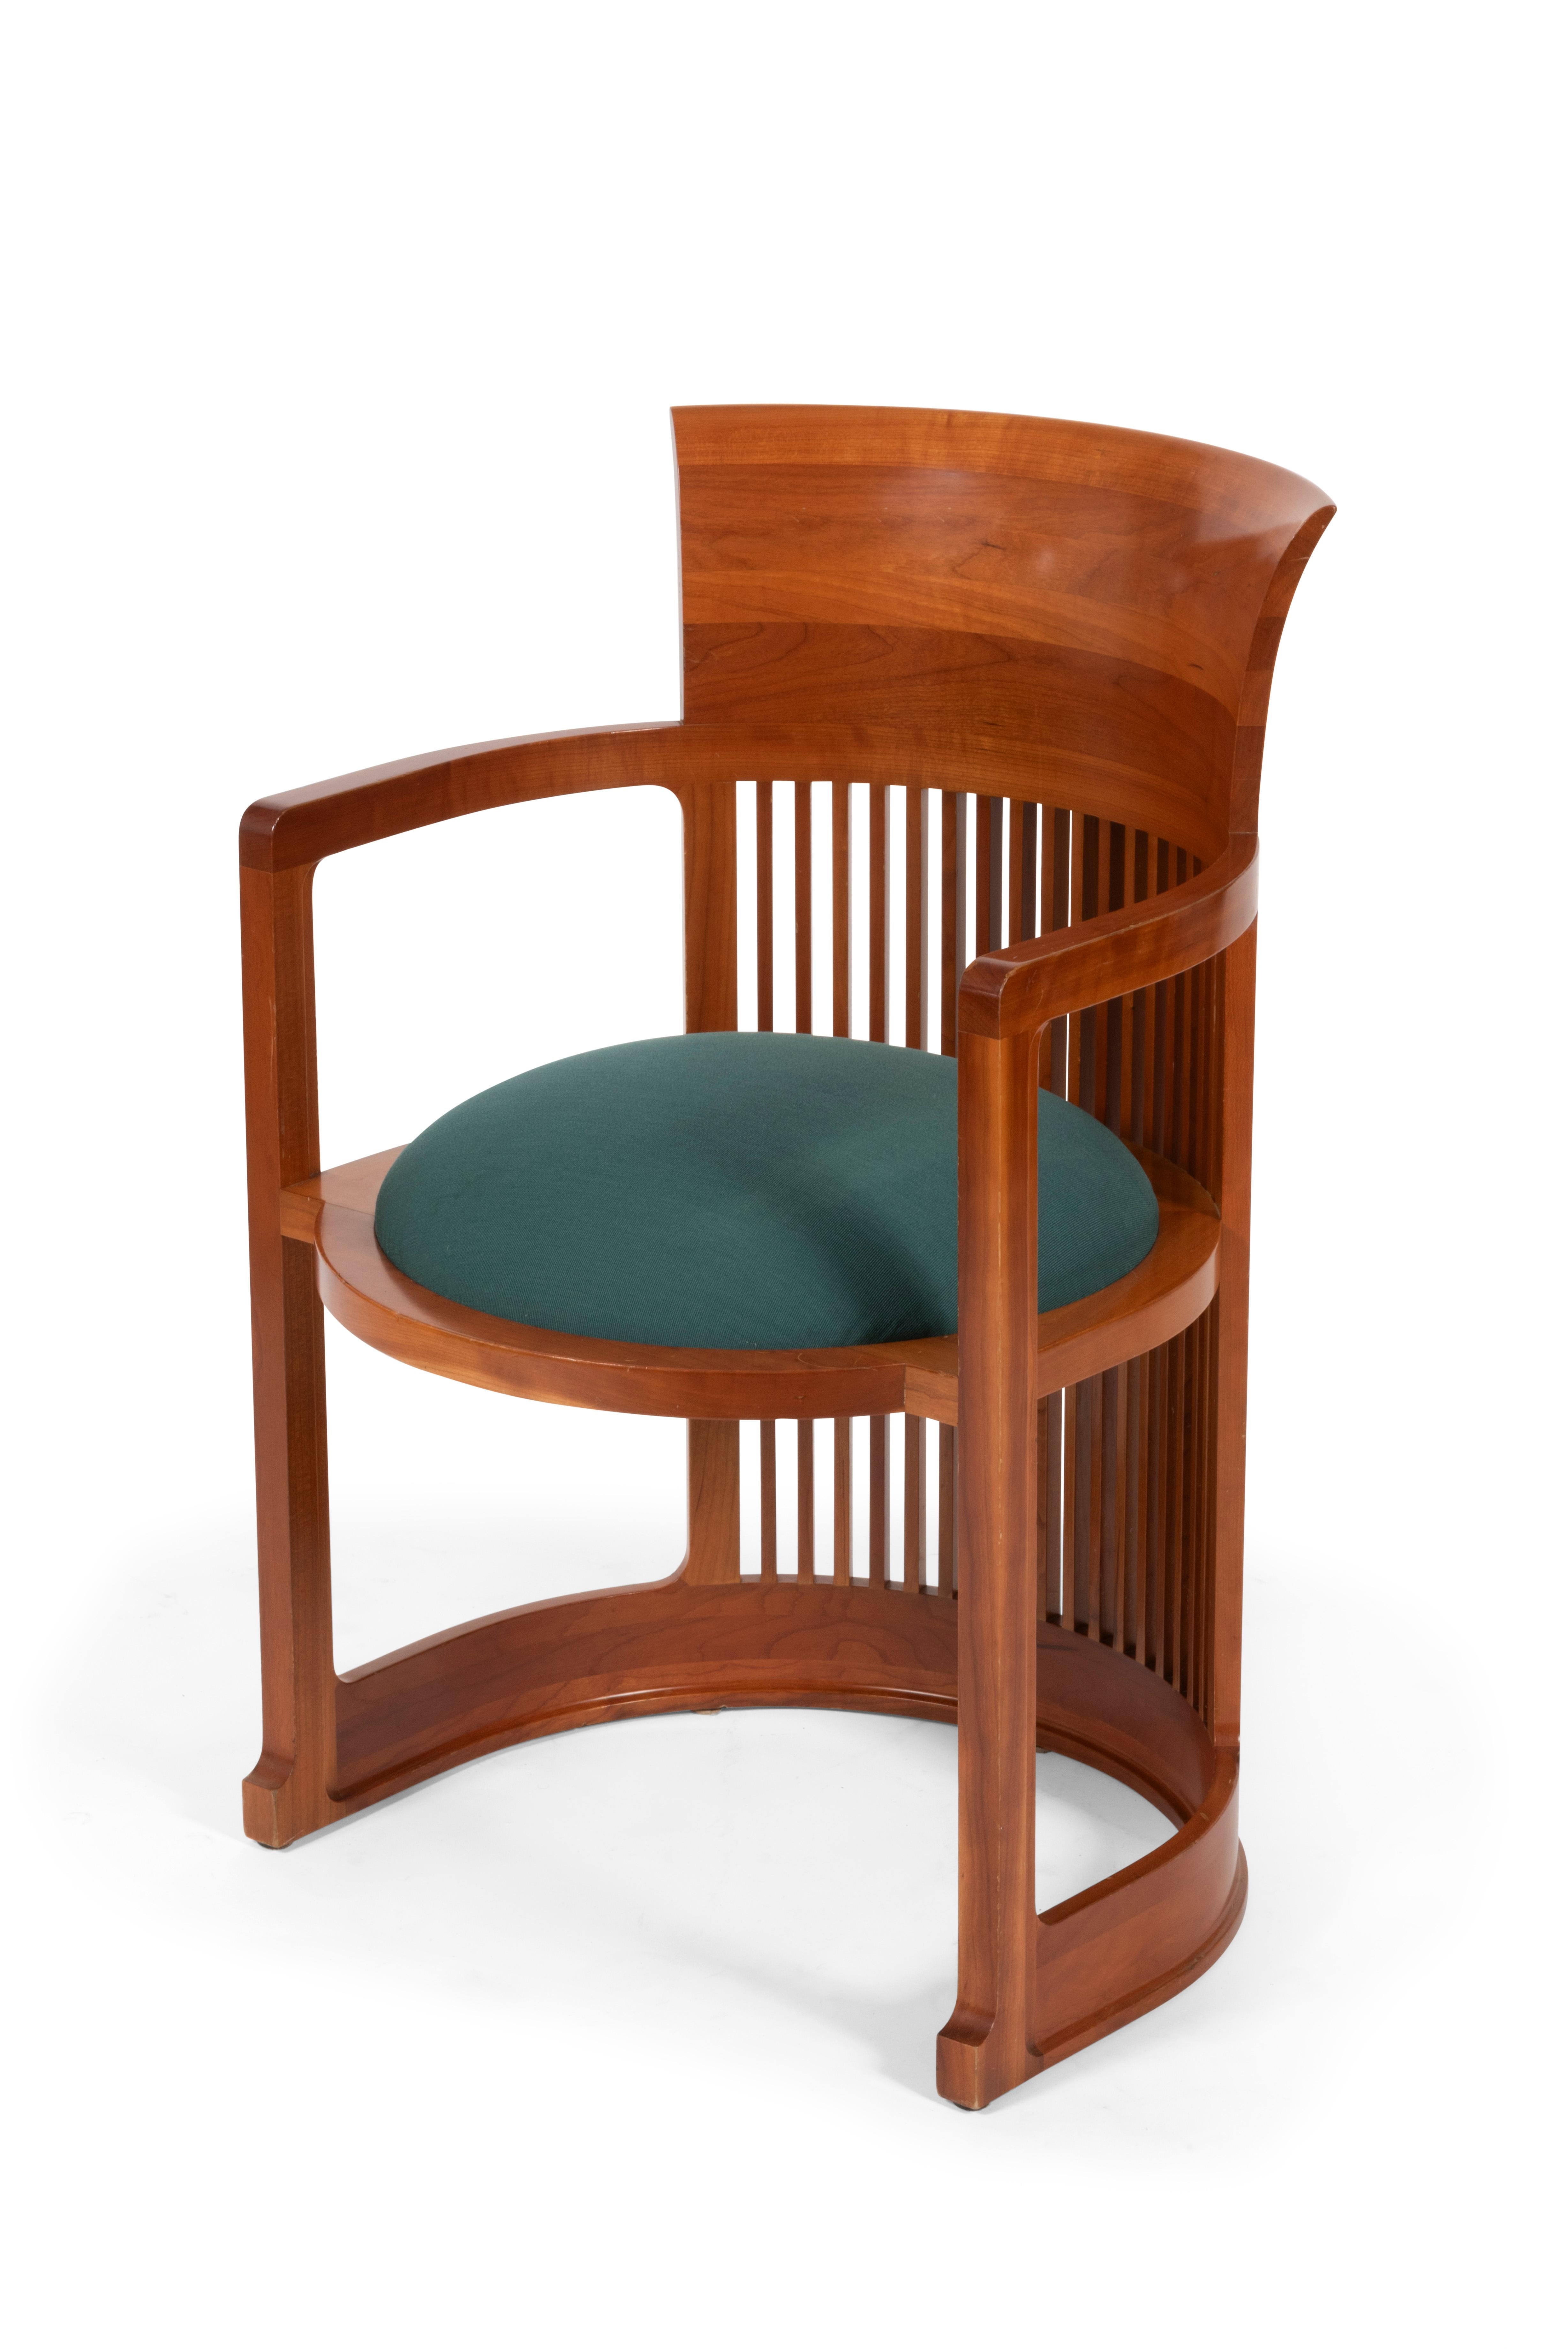 Cet incontournable fauteuil du mouvement Arts & Crafts du début du XXe siècle reprenant la forme d’un baril, est inventé par l’architecte Frank Lloyd Wright en 1904 et ensuite édité par Cassina dans les années 80.

La structure en bois de merisier